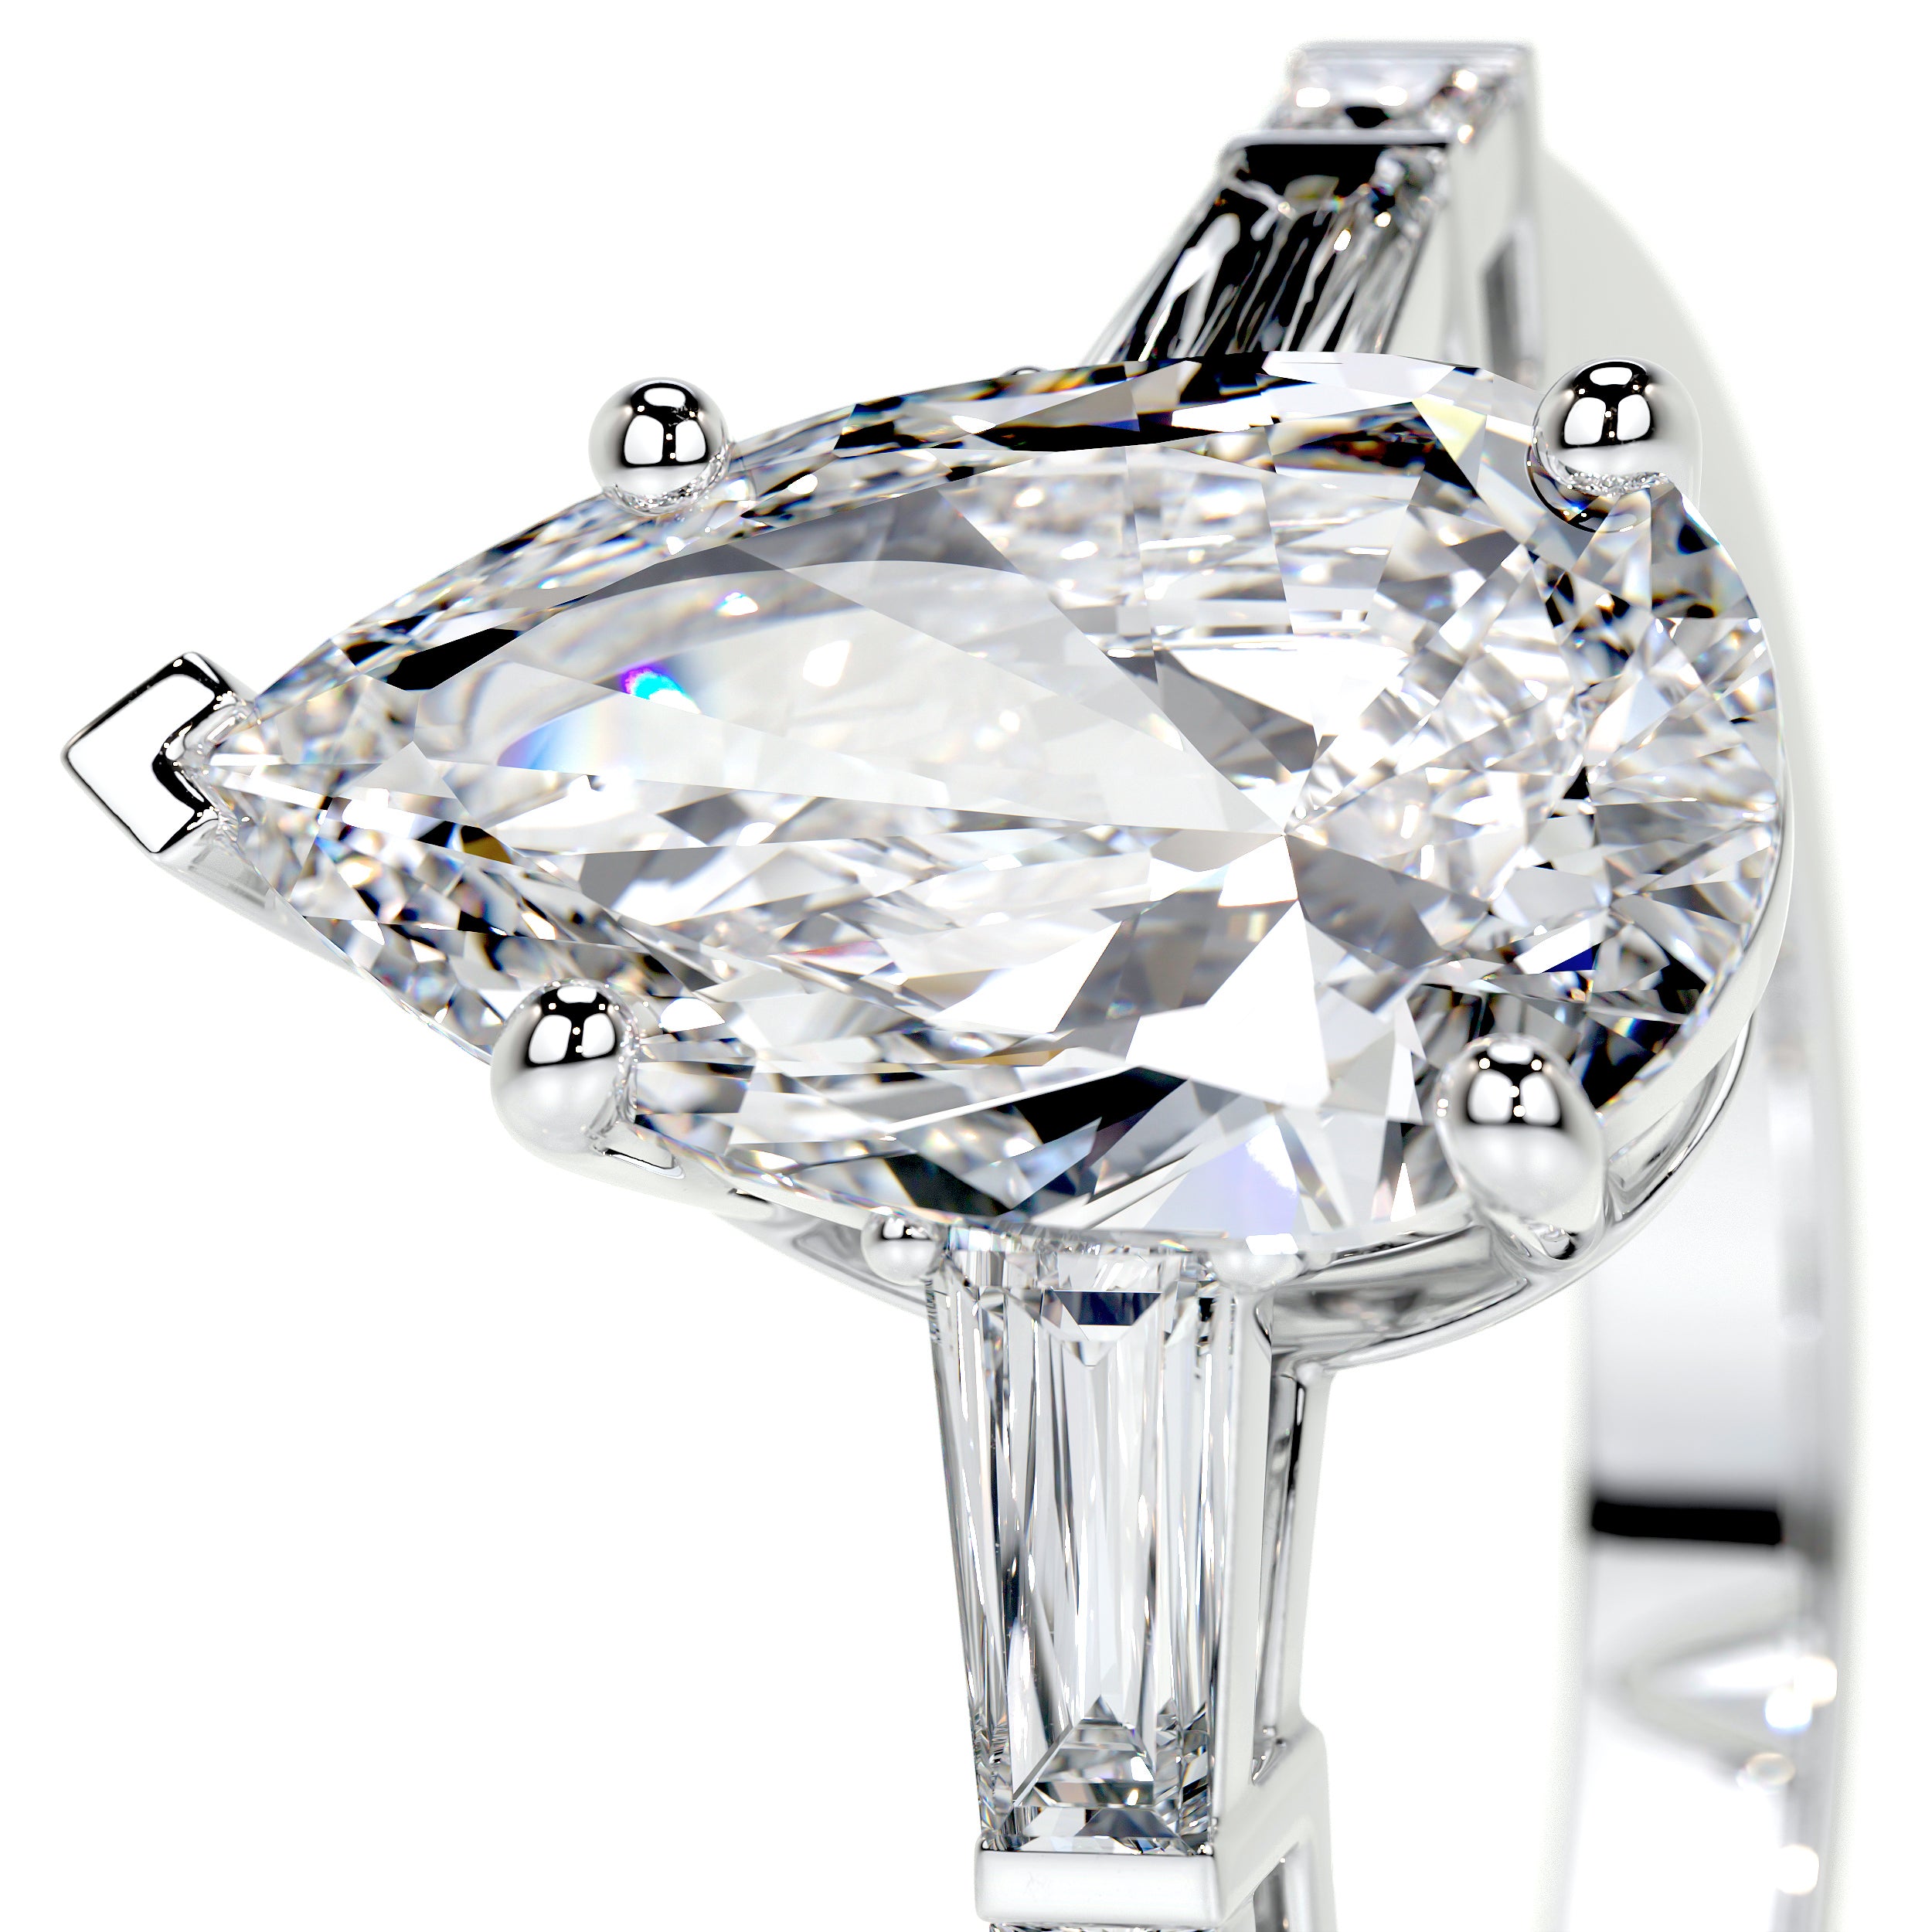 Keyshawna Lab Grown Diamond Ring -14K White Gold